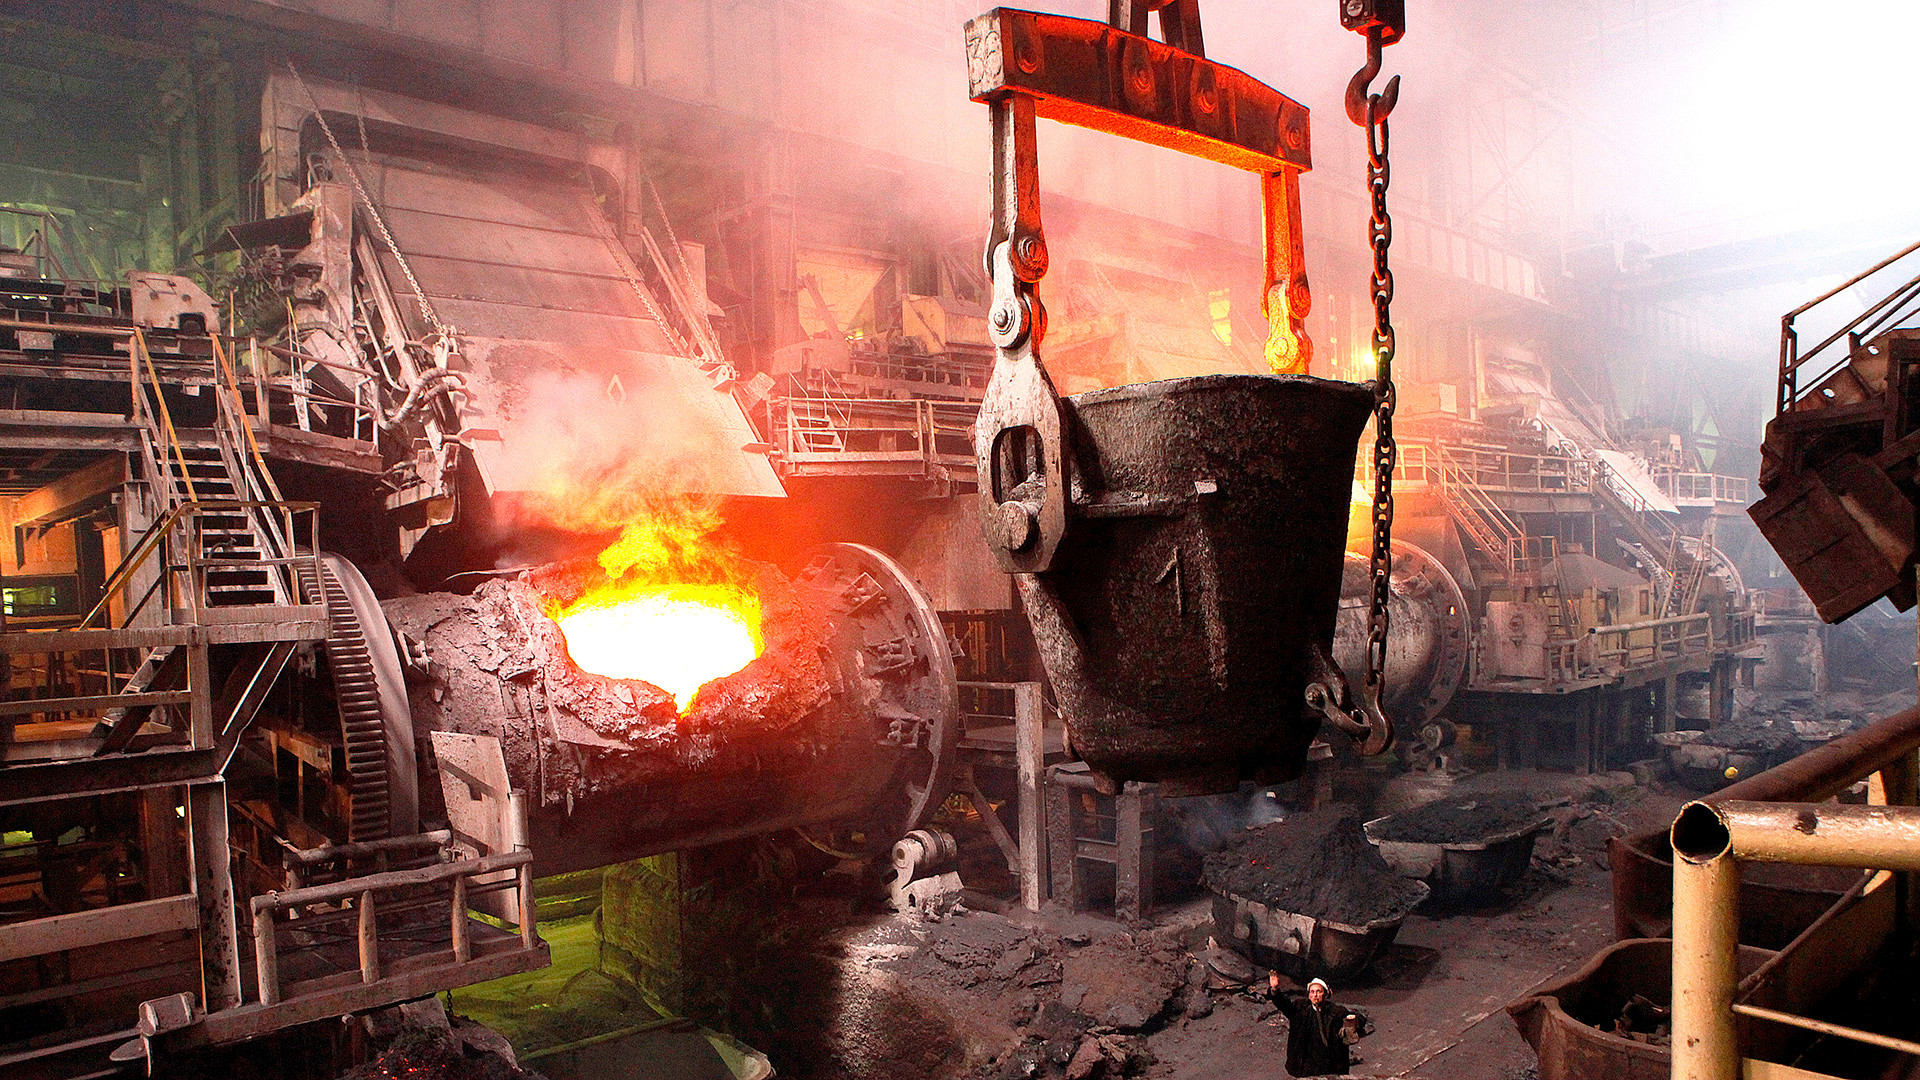 粗鋼、鉄、銅を生産するいくつかの工場で働いていた労働者が、ニジニ・タギルの人口の基をなした。